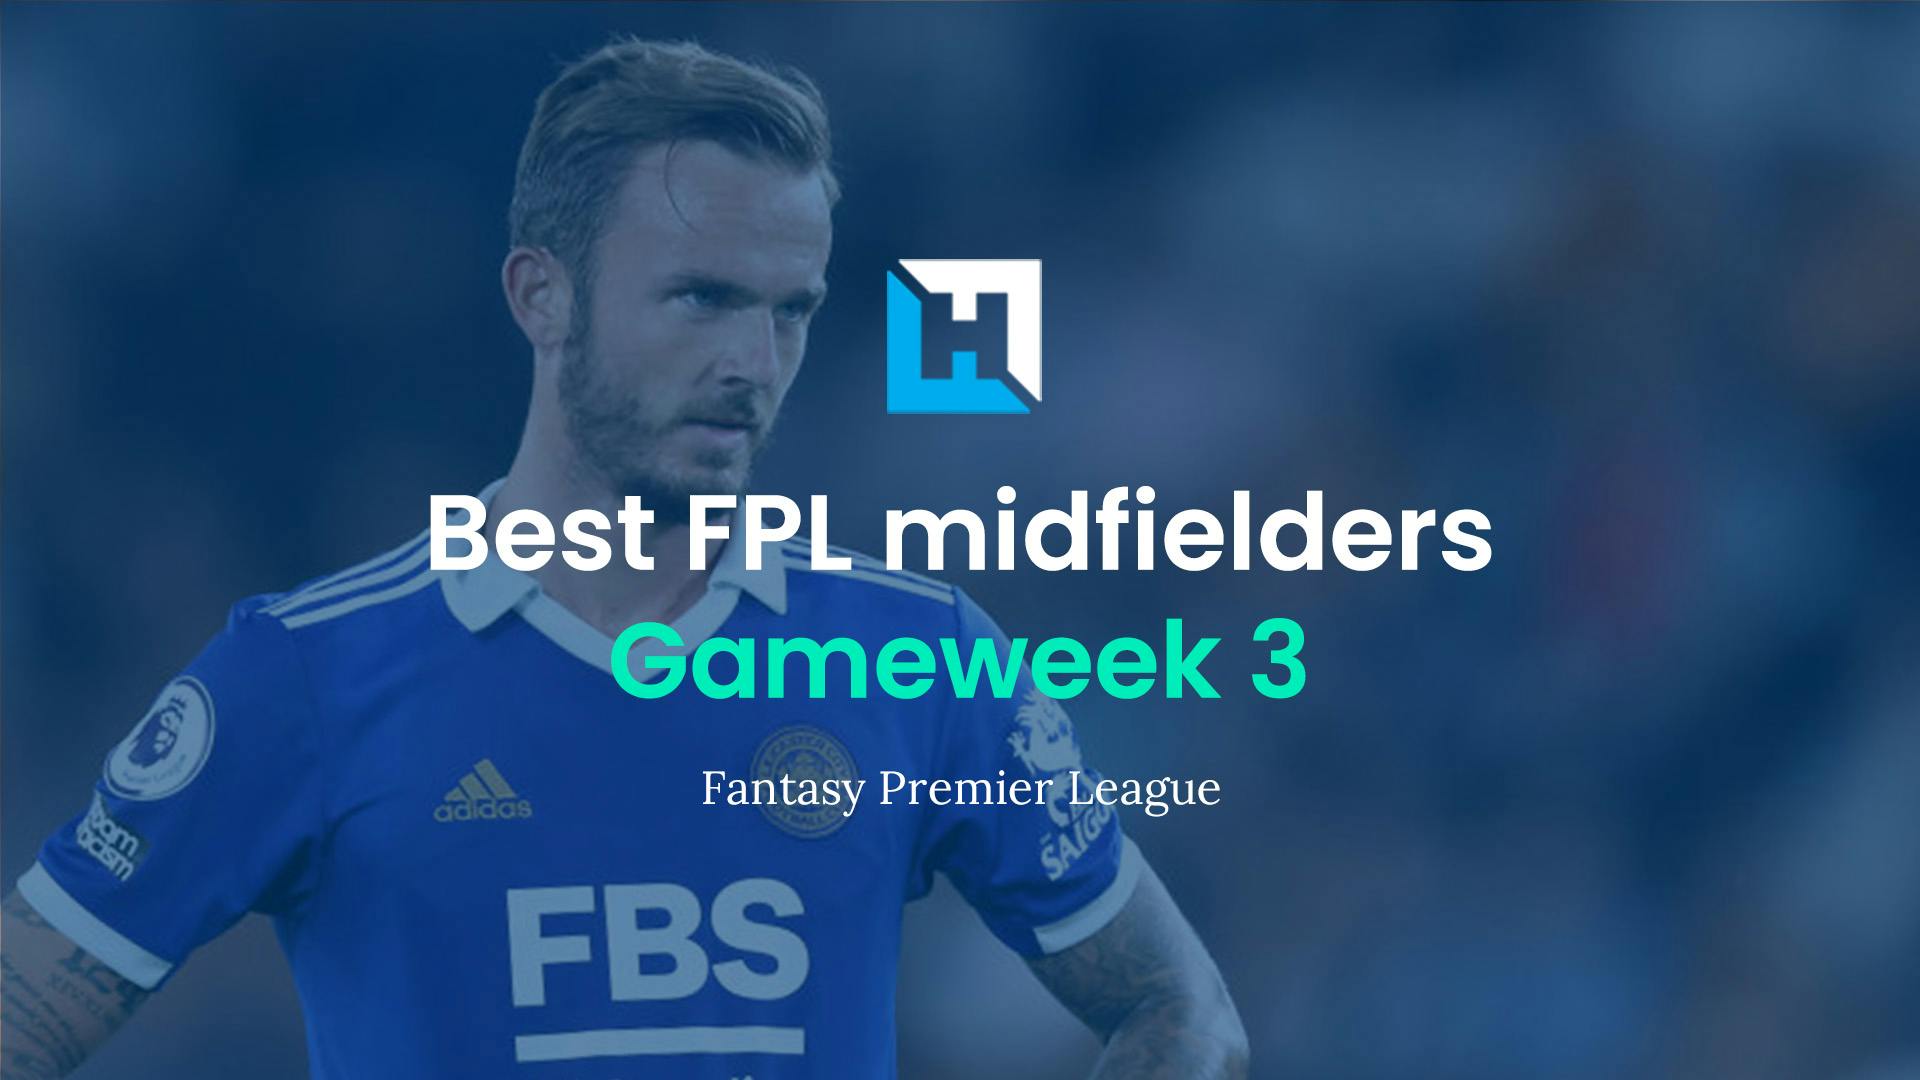 Best FPL players for Gameweek 3: Top 5 best midfielders